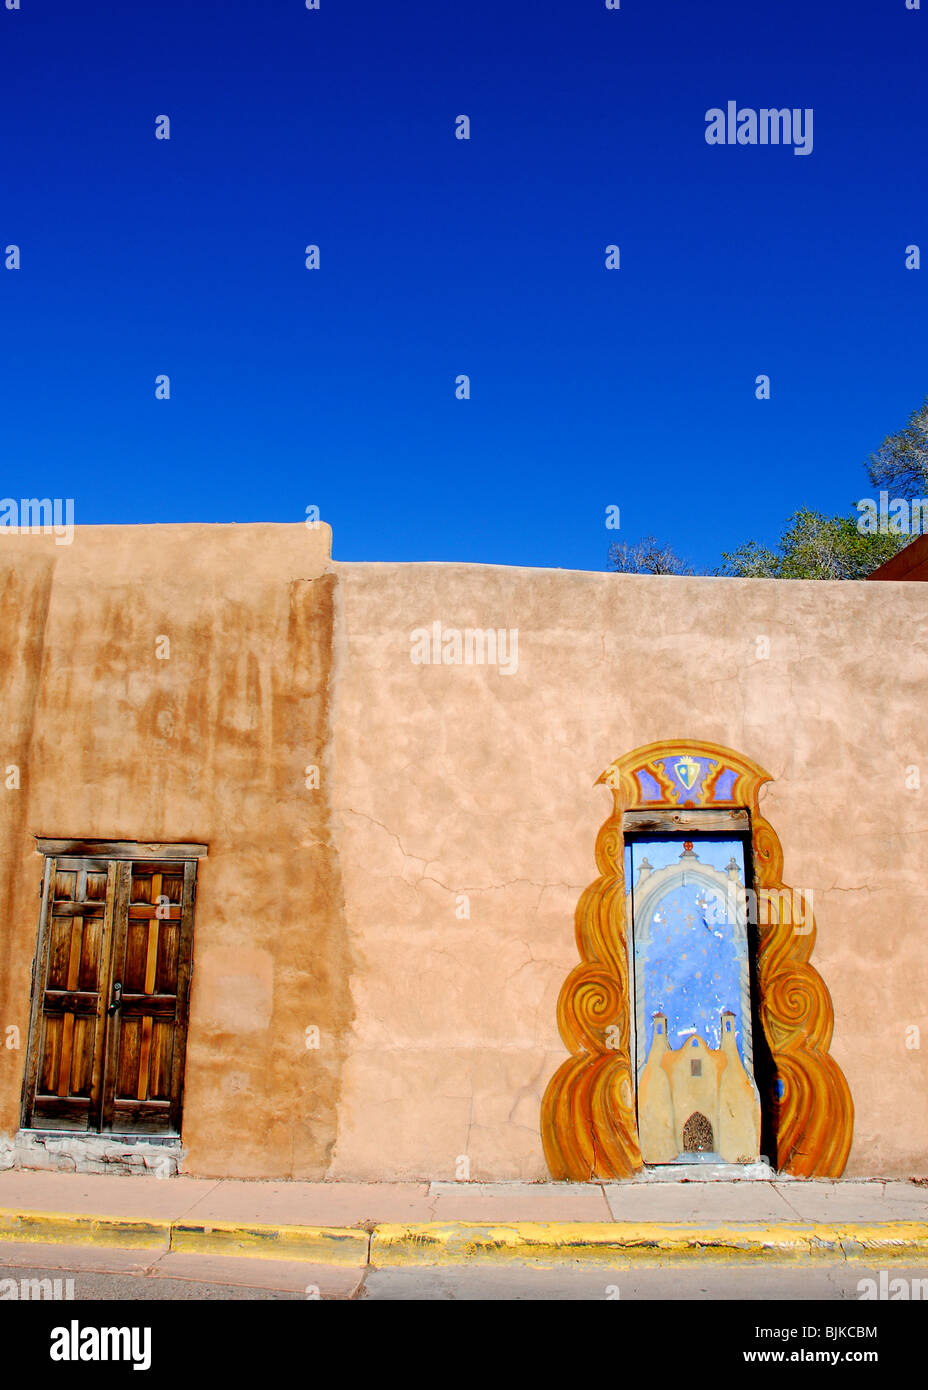 Santa Fe, New Mexico, Stati Uniti d'America - 20 Aprile 2008: artisticamente porte dipinte e adobe la parete di cielo blu brillante sul pomeriggio di sole nel centro di Santa Fe. Foto Stock